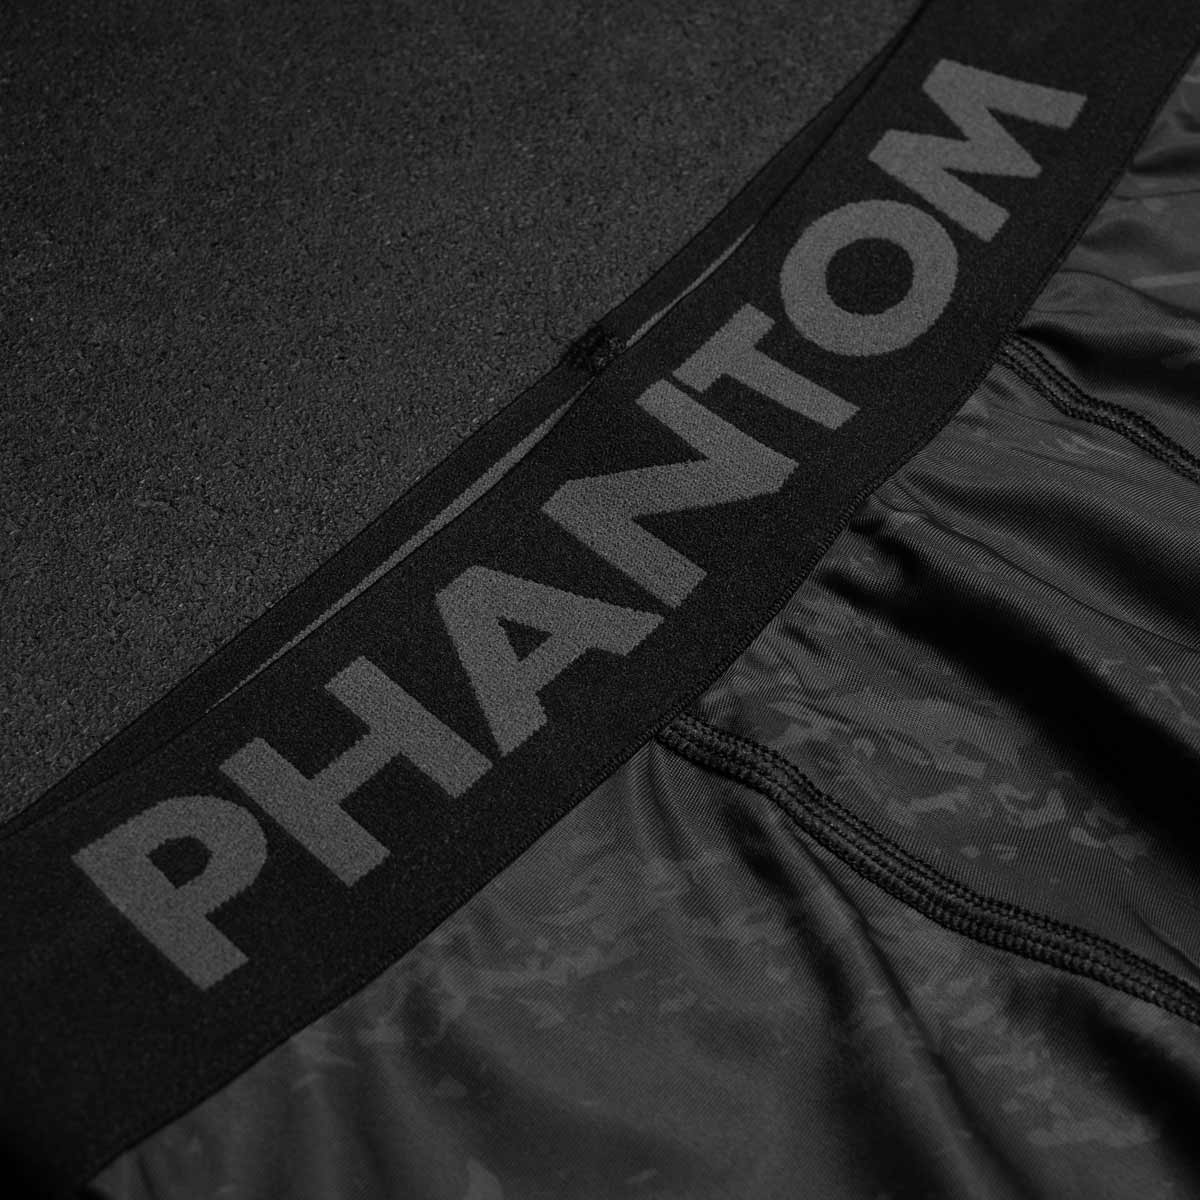 Phantom Compression Tights im Muay Thai Design für Kampfsport Training und Wettkampf. Mit thailändischem Design und Sak Yant Grafiken. Mit dickem Bund für ein angenehmes Tragegefühl.